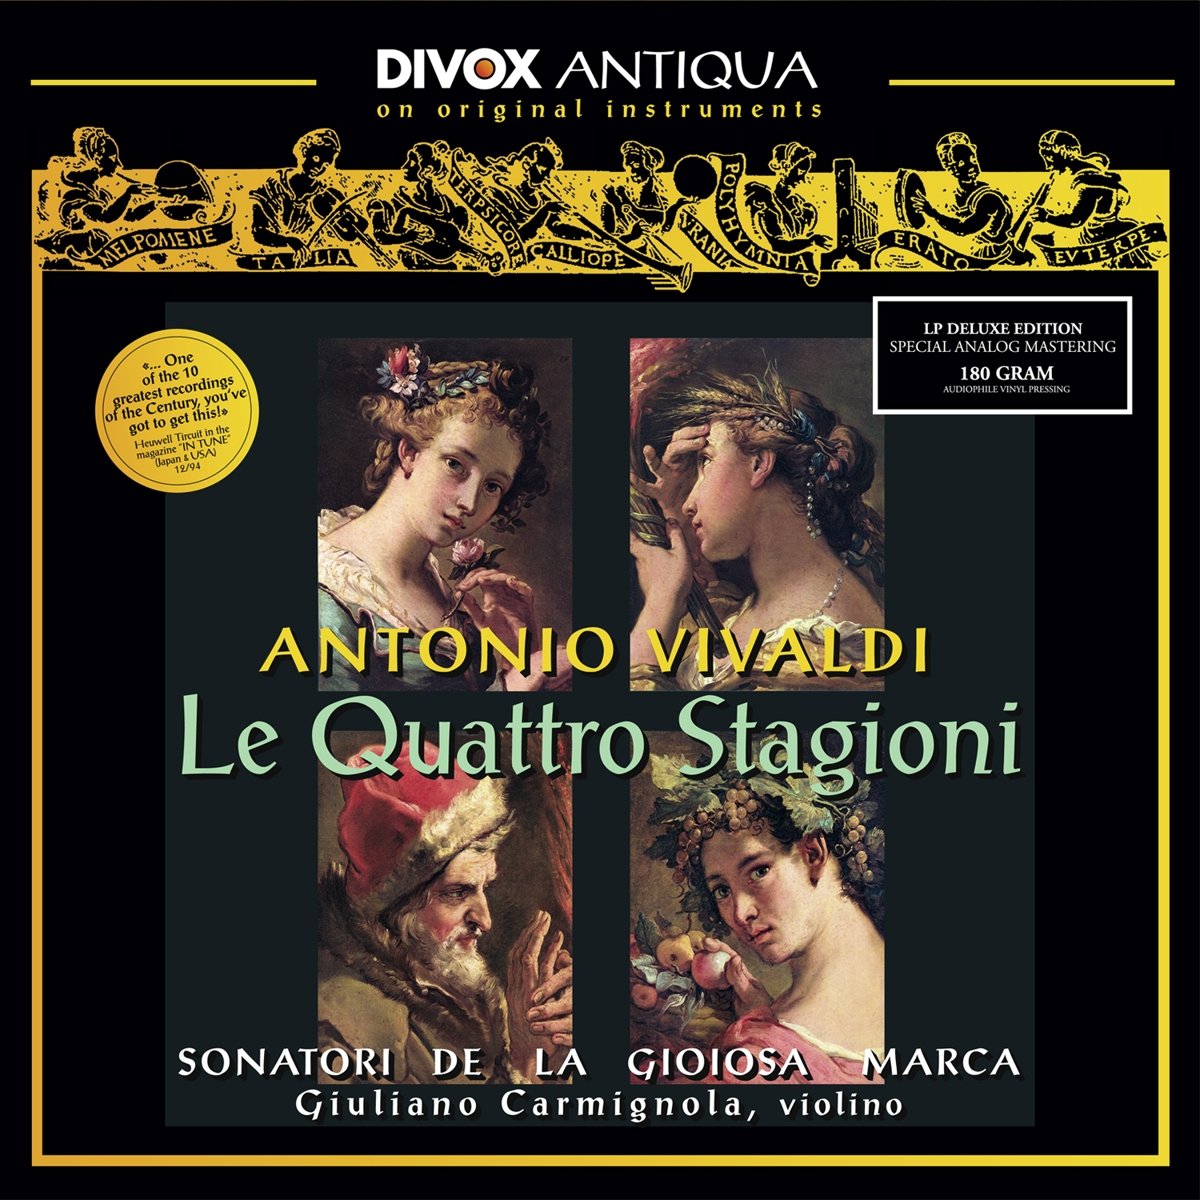 Vinile Antonio Vivaldi - Le Quattro Stagioni NUOVO SIGILLATO, EDIZIONE DEL 19/05/2017 SUBITO DISPONIBILE